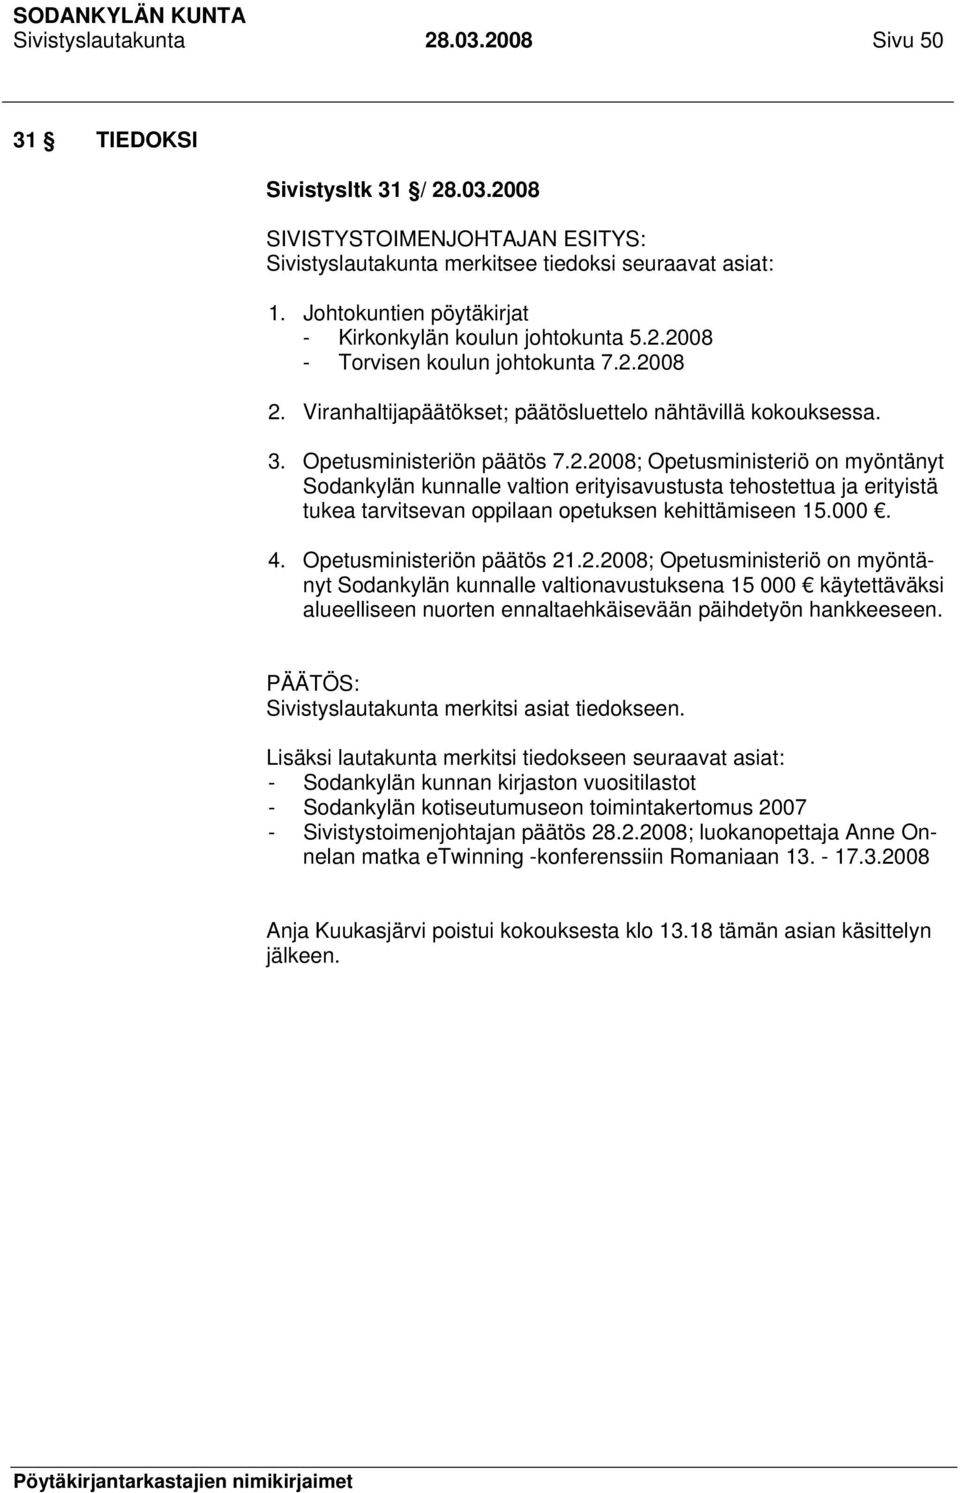 000. 4. Opetusministeriön päätös 21.2.2008; Opetusministeriö on myöntänyt Sodankylän kunnalle valtionavustuksena 15 000 käytettäväksi alueelliseen nuorten ennaltaehkäisevään päihdetyön hankkeeseen.